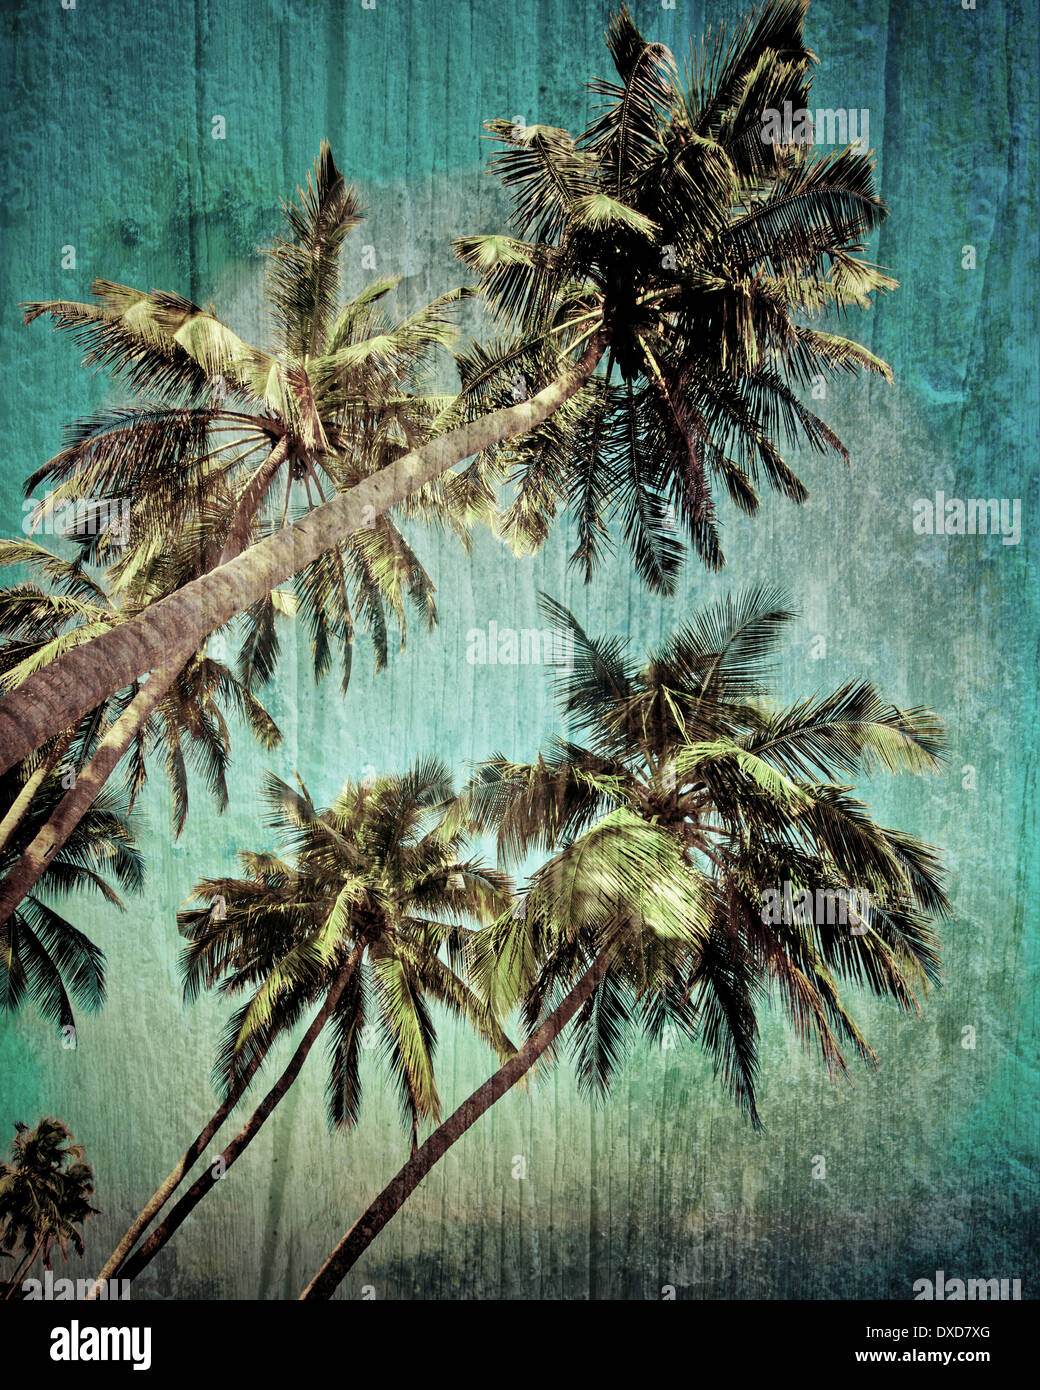 Coconut Palm tree isolate su cielo tropicale. Immagine in stile vintage. India Foto Stock